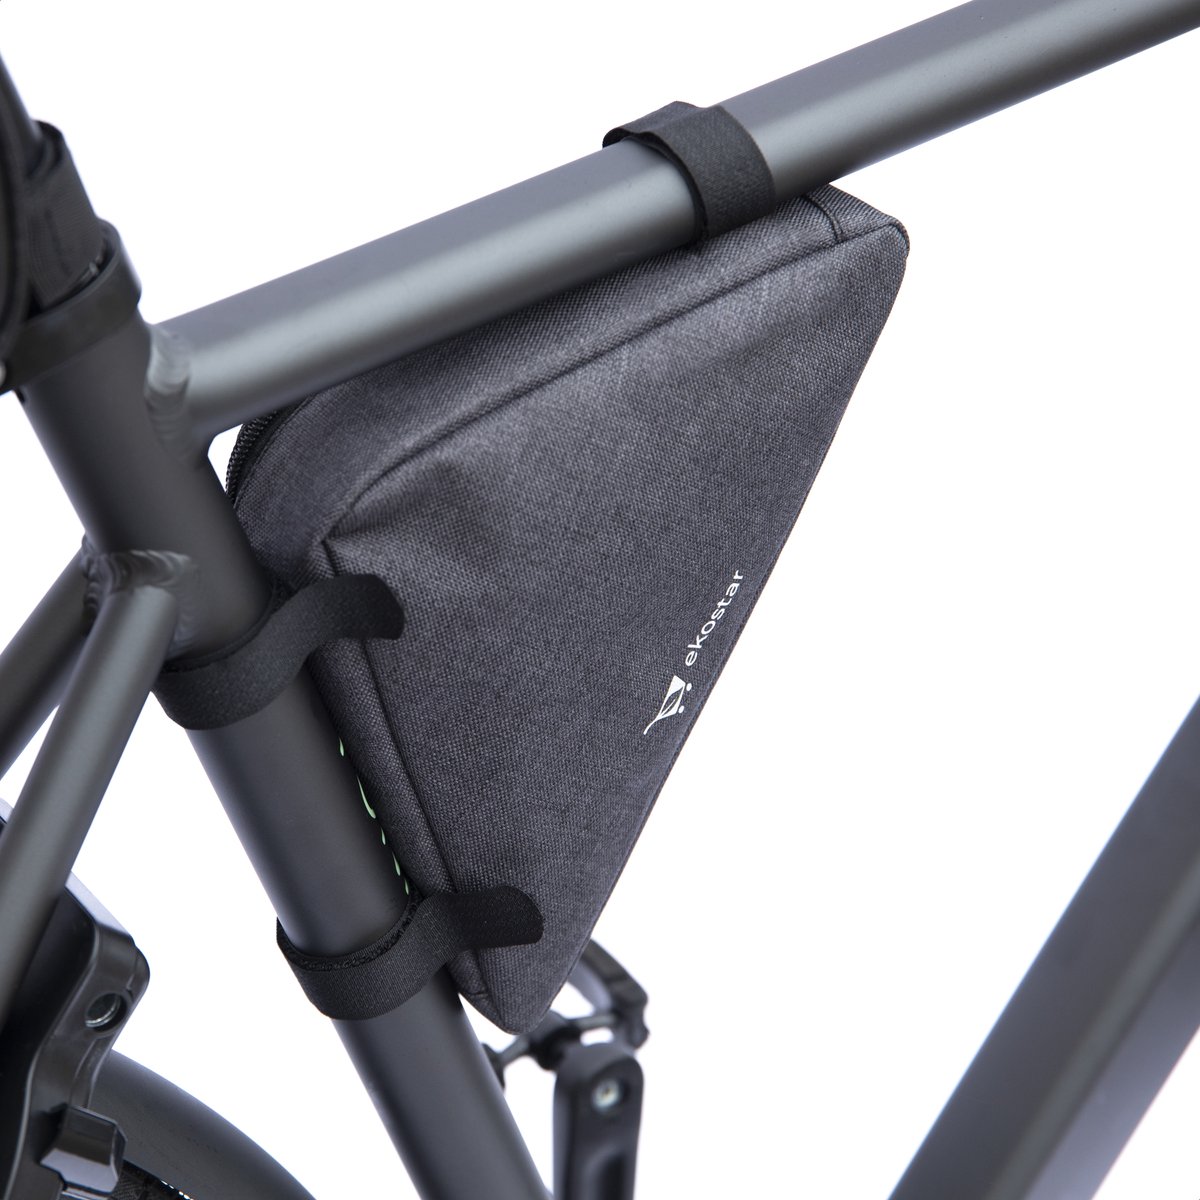 Ekostar® Online Shopping - Frametas fiets - Fietstas - Waterafstotend – Donkergrijs - Universeel - OOk voor Elektrische fietsen & Racefiets